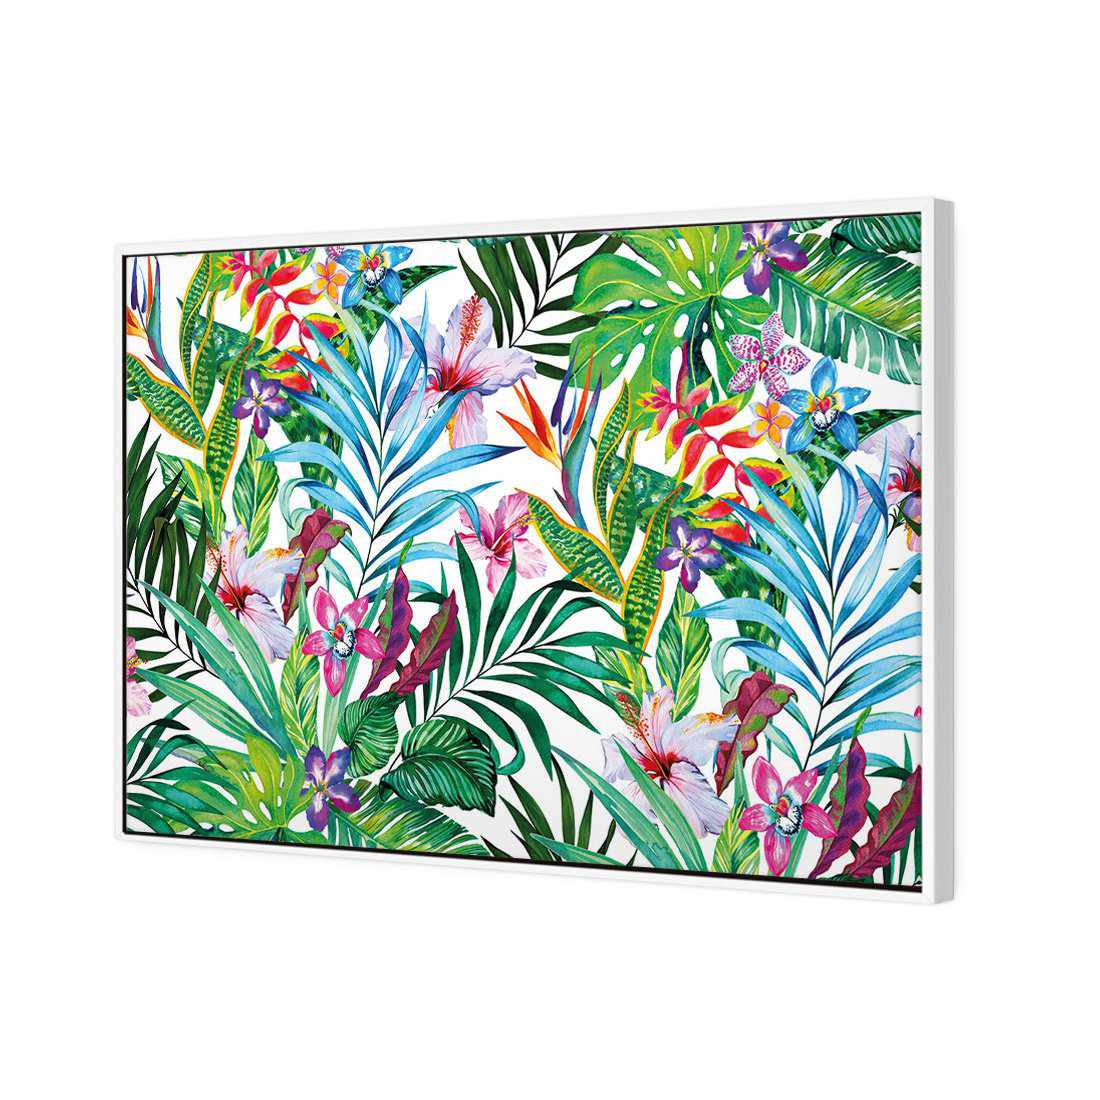 Jungle At Noon Canvas Art-Canvas-Wall Art Designs-45x30cm-Canvas - White Frame-Wall Art Designs